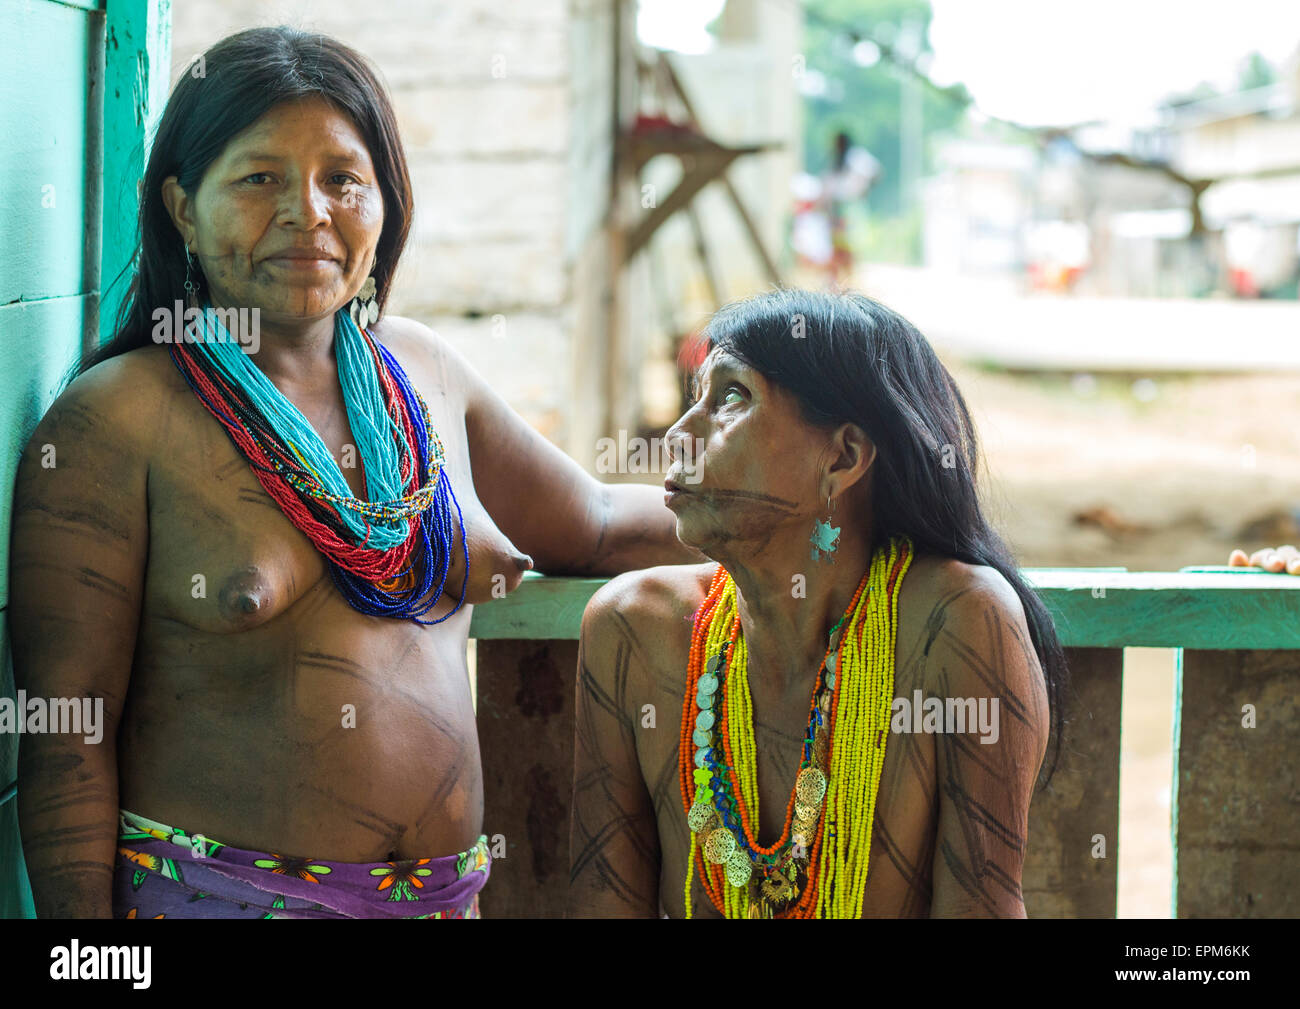 Nude Photos Of Panama Panama Women 86